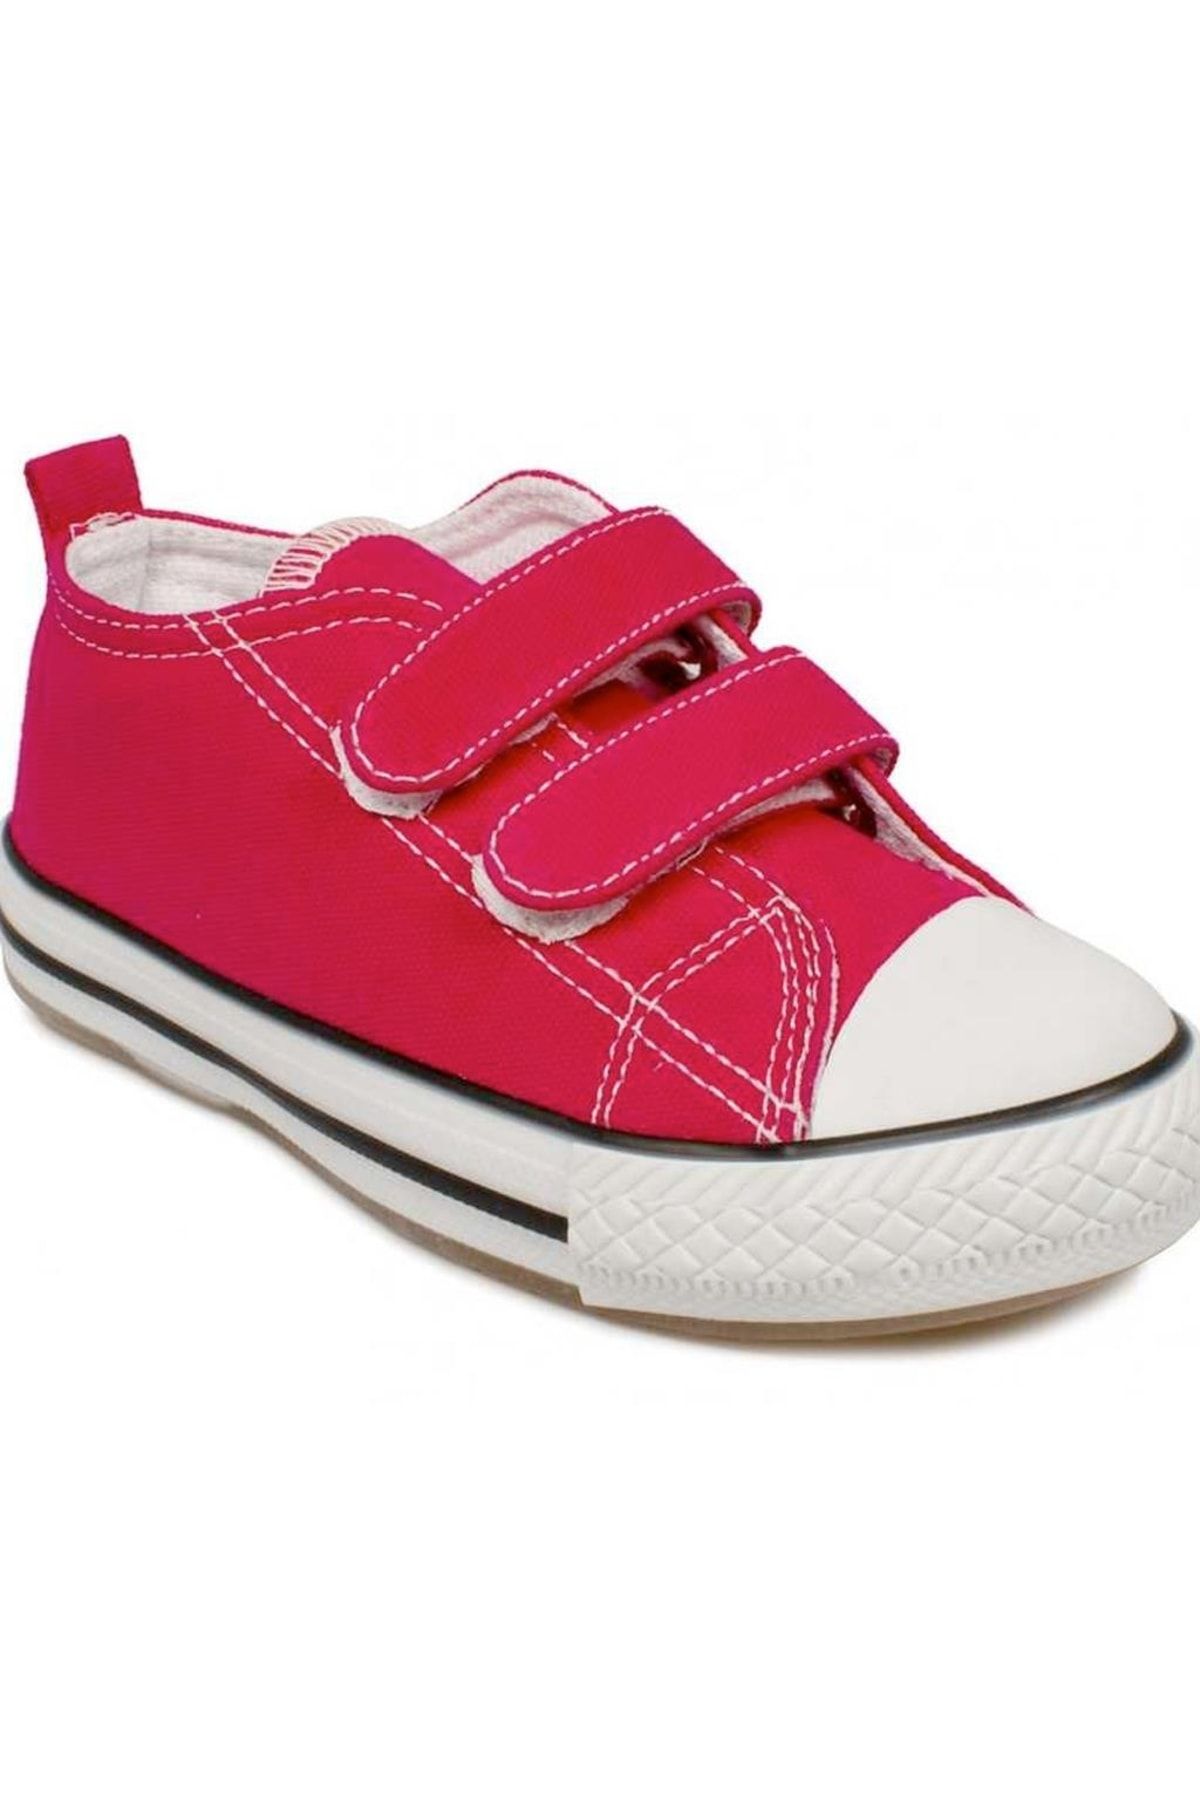 Vicco Unısex Çocuk Kırmızı Günlük Ayakkabı 925-p20y-150 Pino